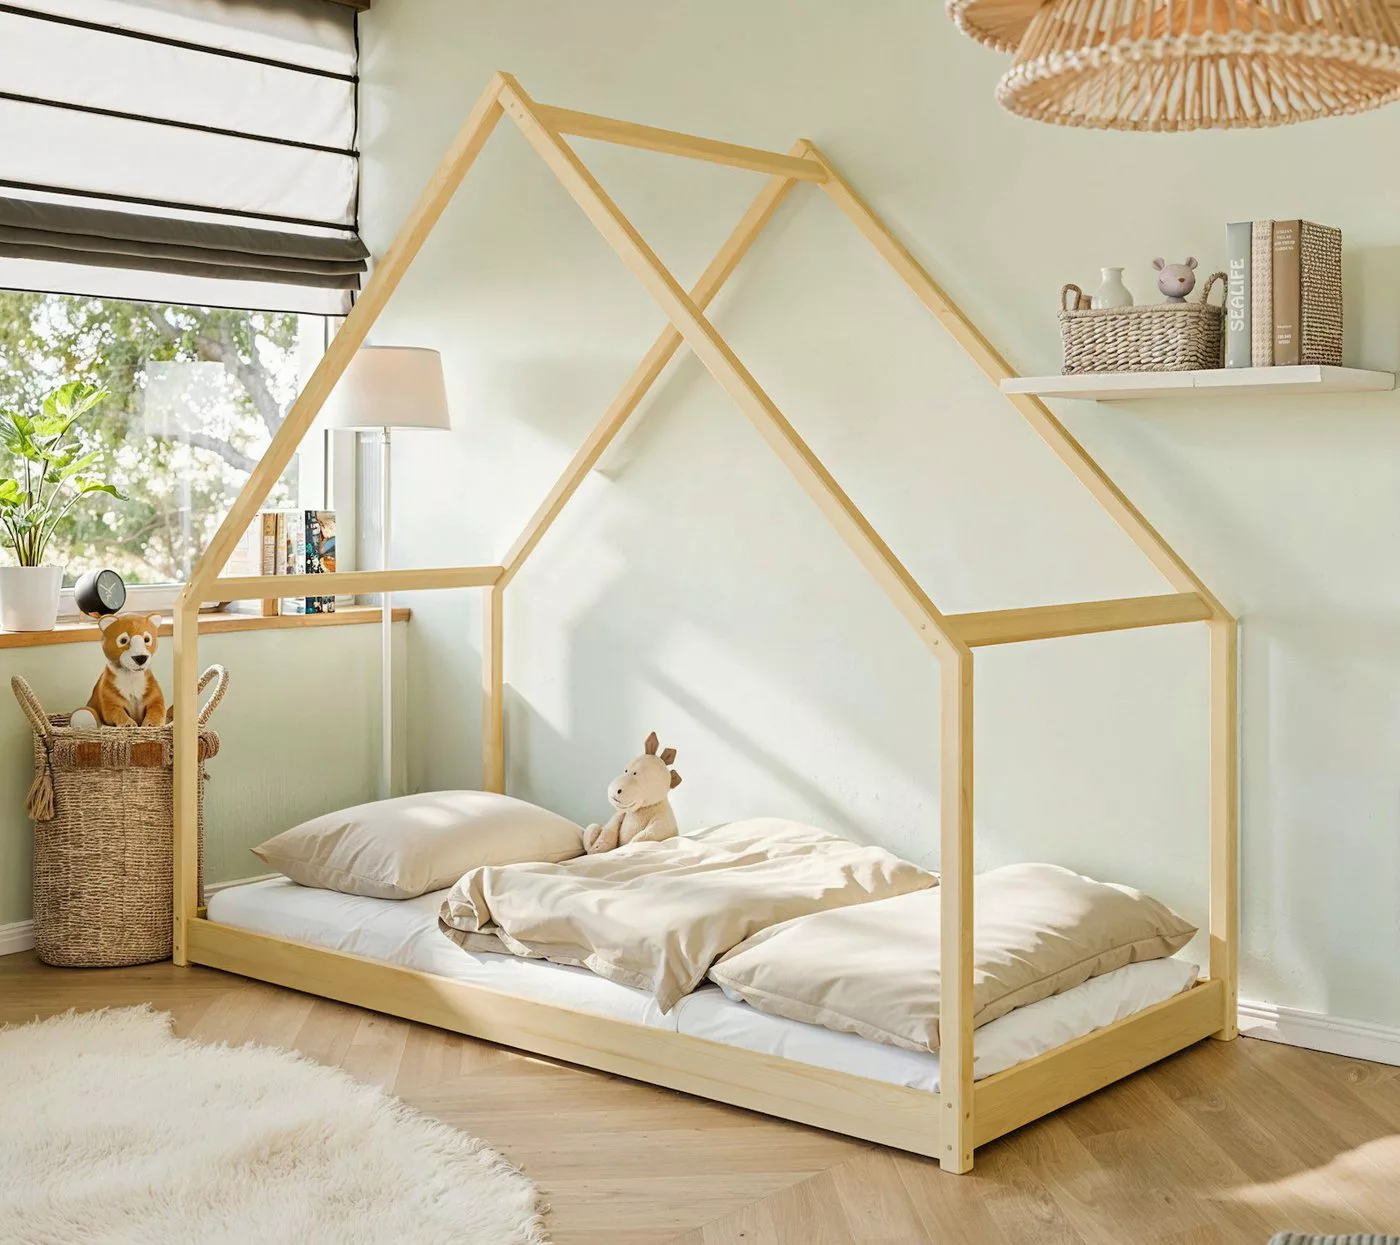 thematys Hausbett Kinderbett Bodenbett mit Dach (bodentiefes Kinderhausbett günstig online kaufen